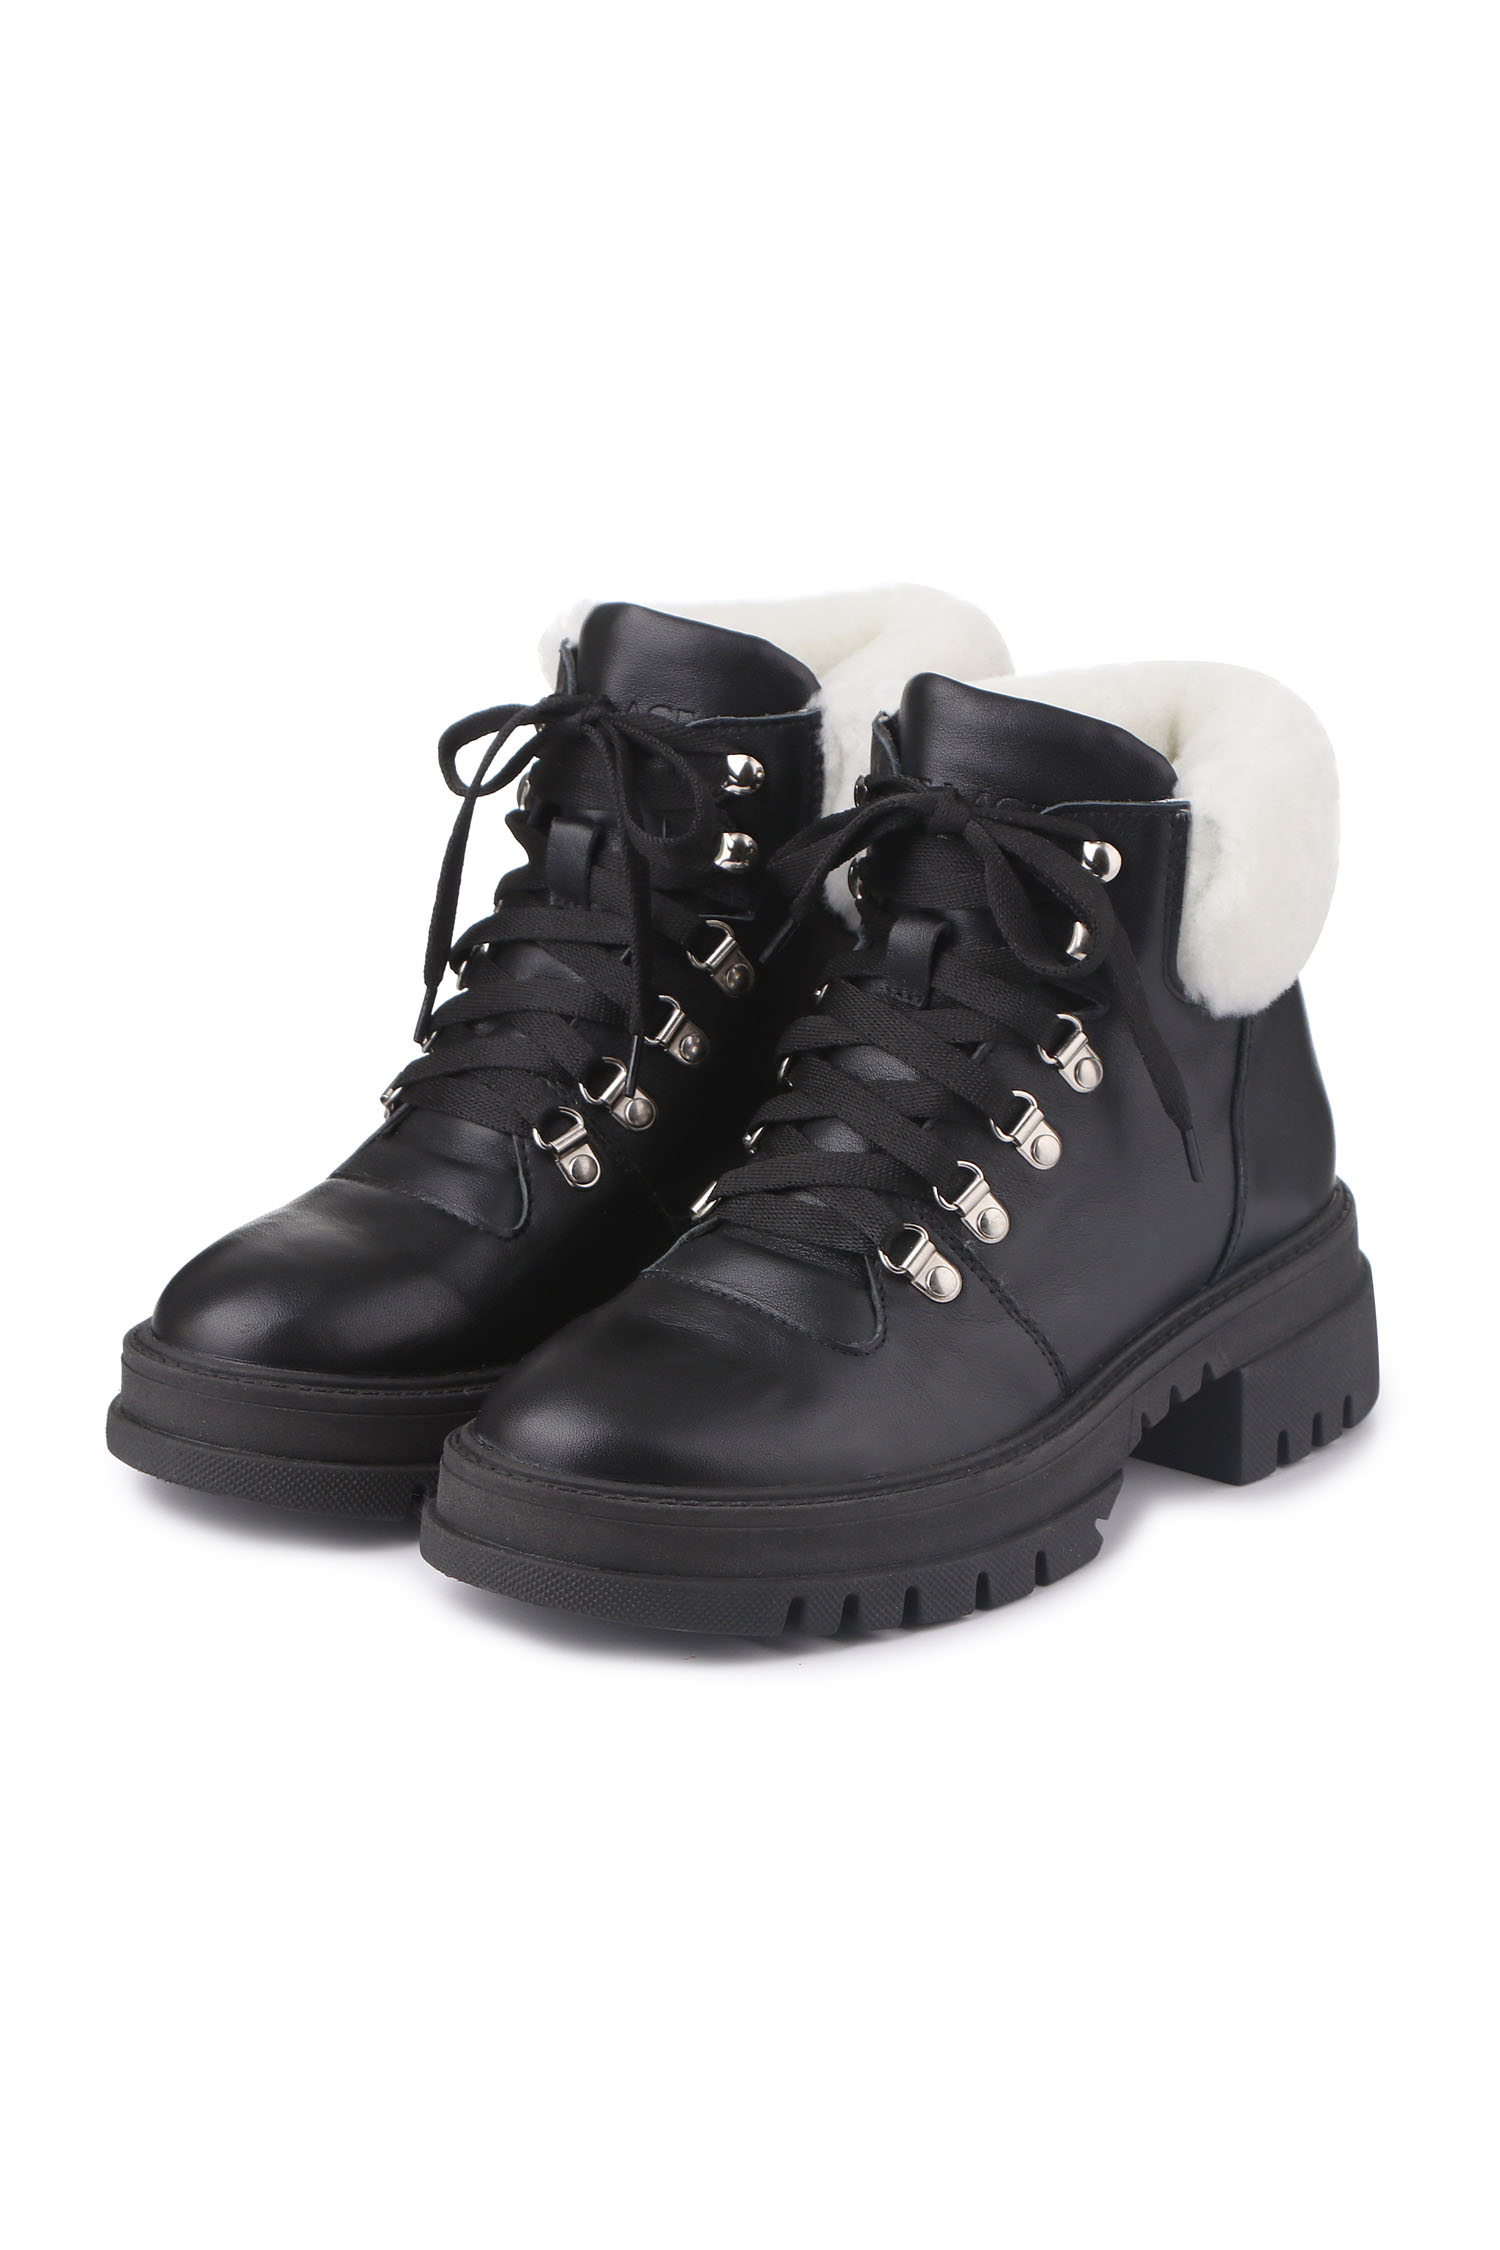 Зимові черевики Hiking boots чорні з білим хутром - THE LACE фото 123276